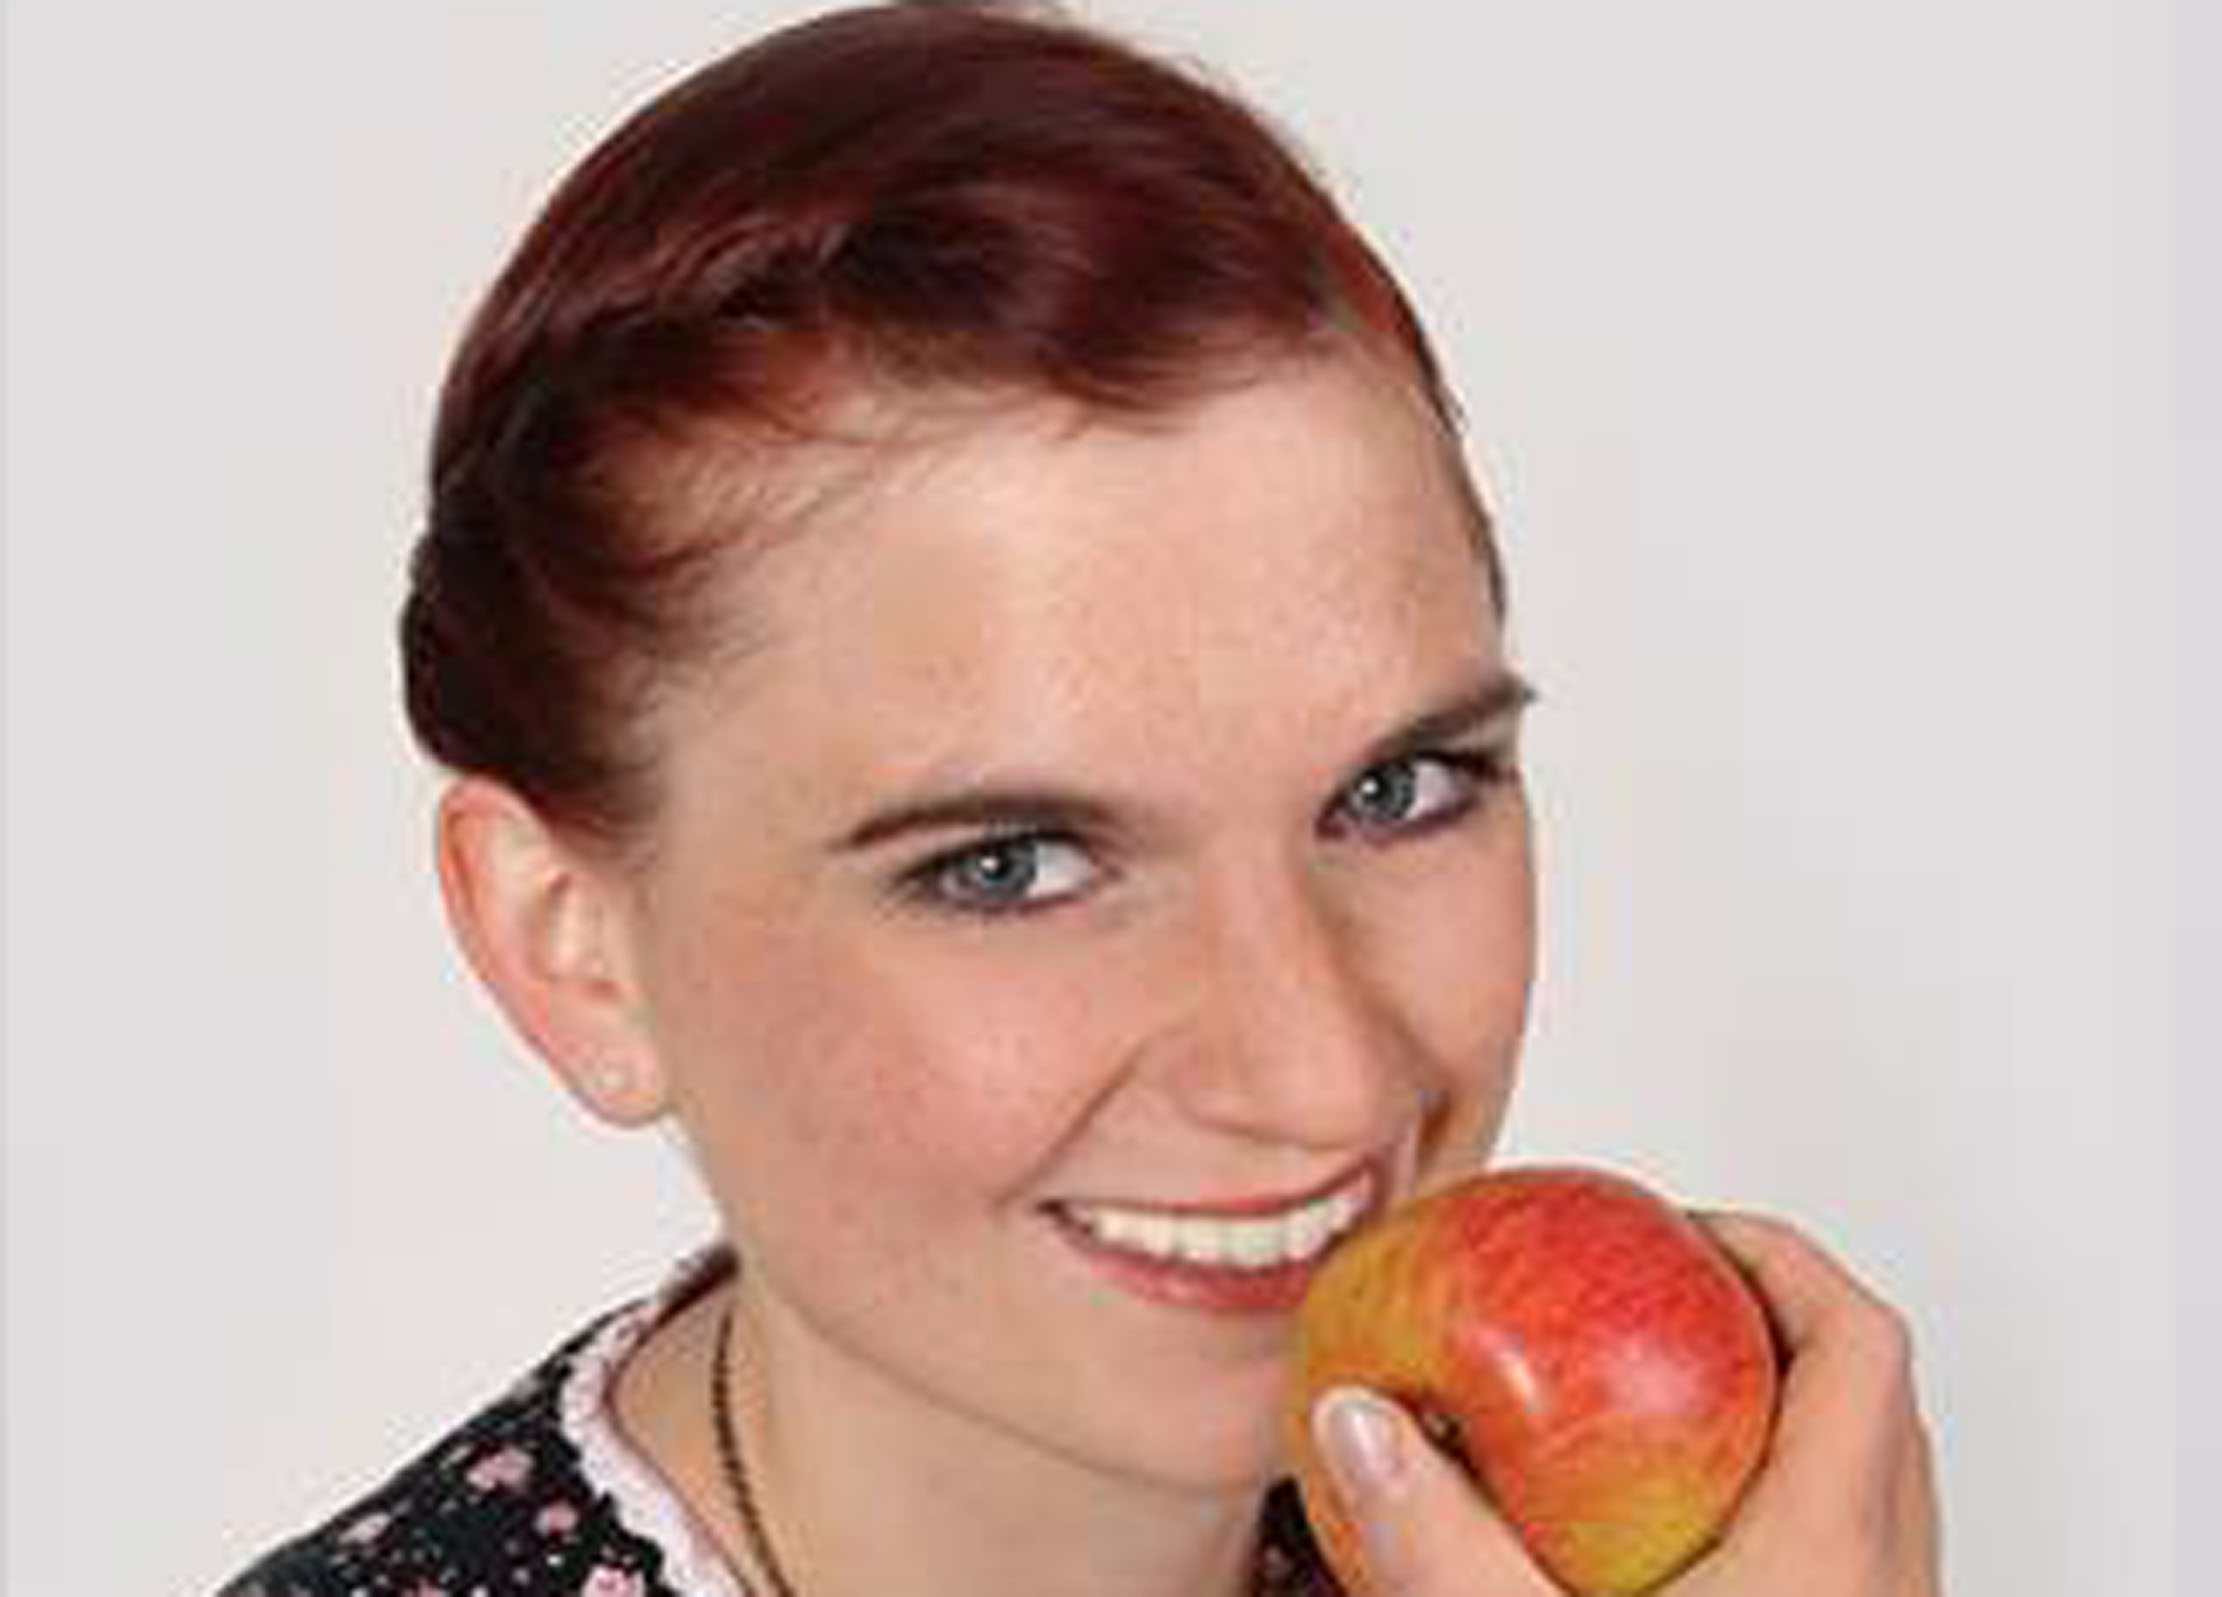 Königsporträt: Die Romröder Apfelkönigin Julia I. ruft zur Apfel-Ernte im Schlosspark auf. Foto: Fotostudio Hohl/Facebookseite der Apfelkönigin